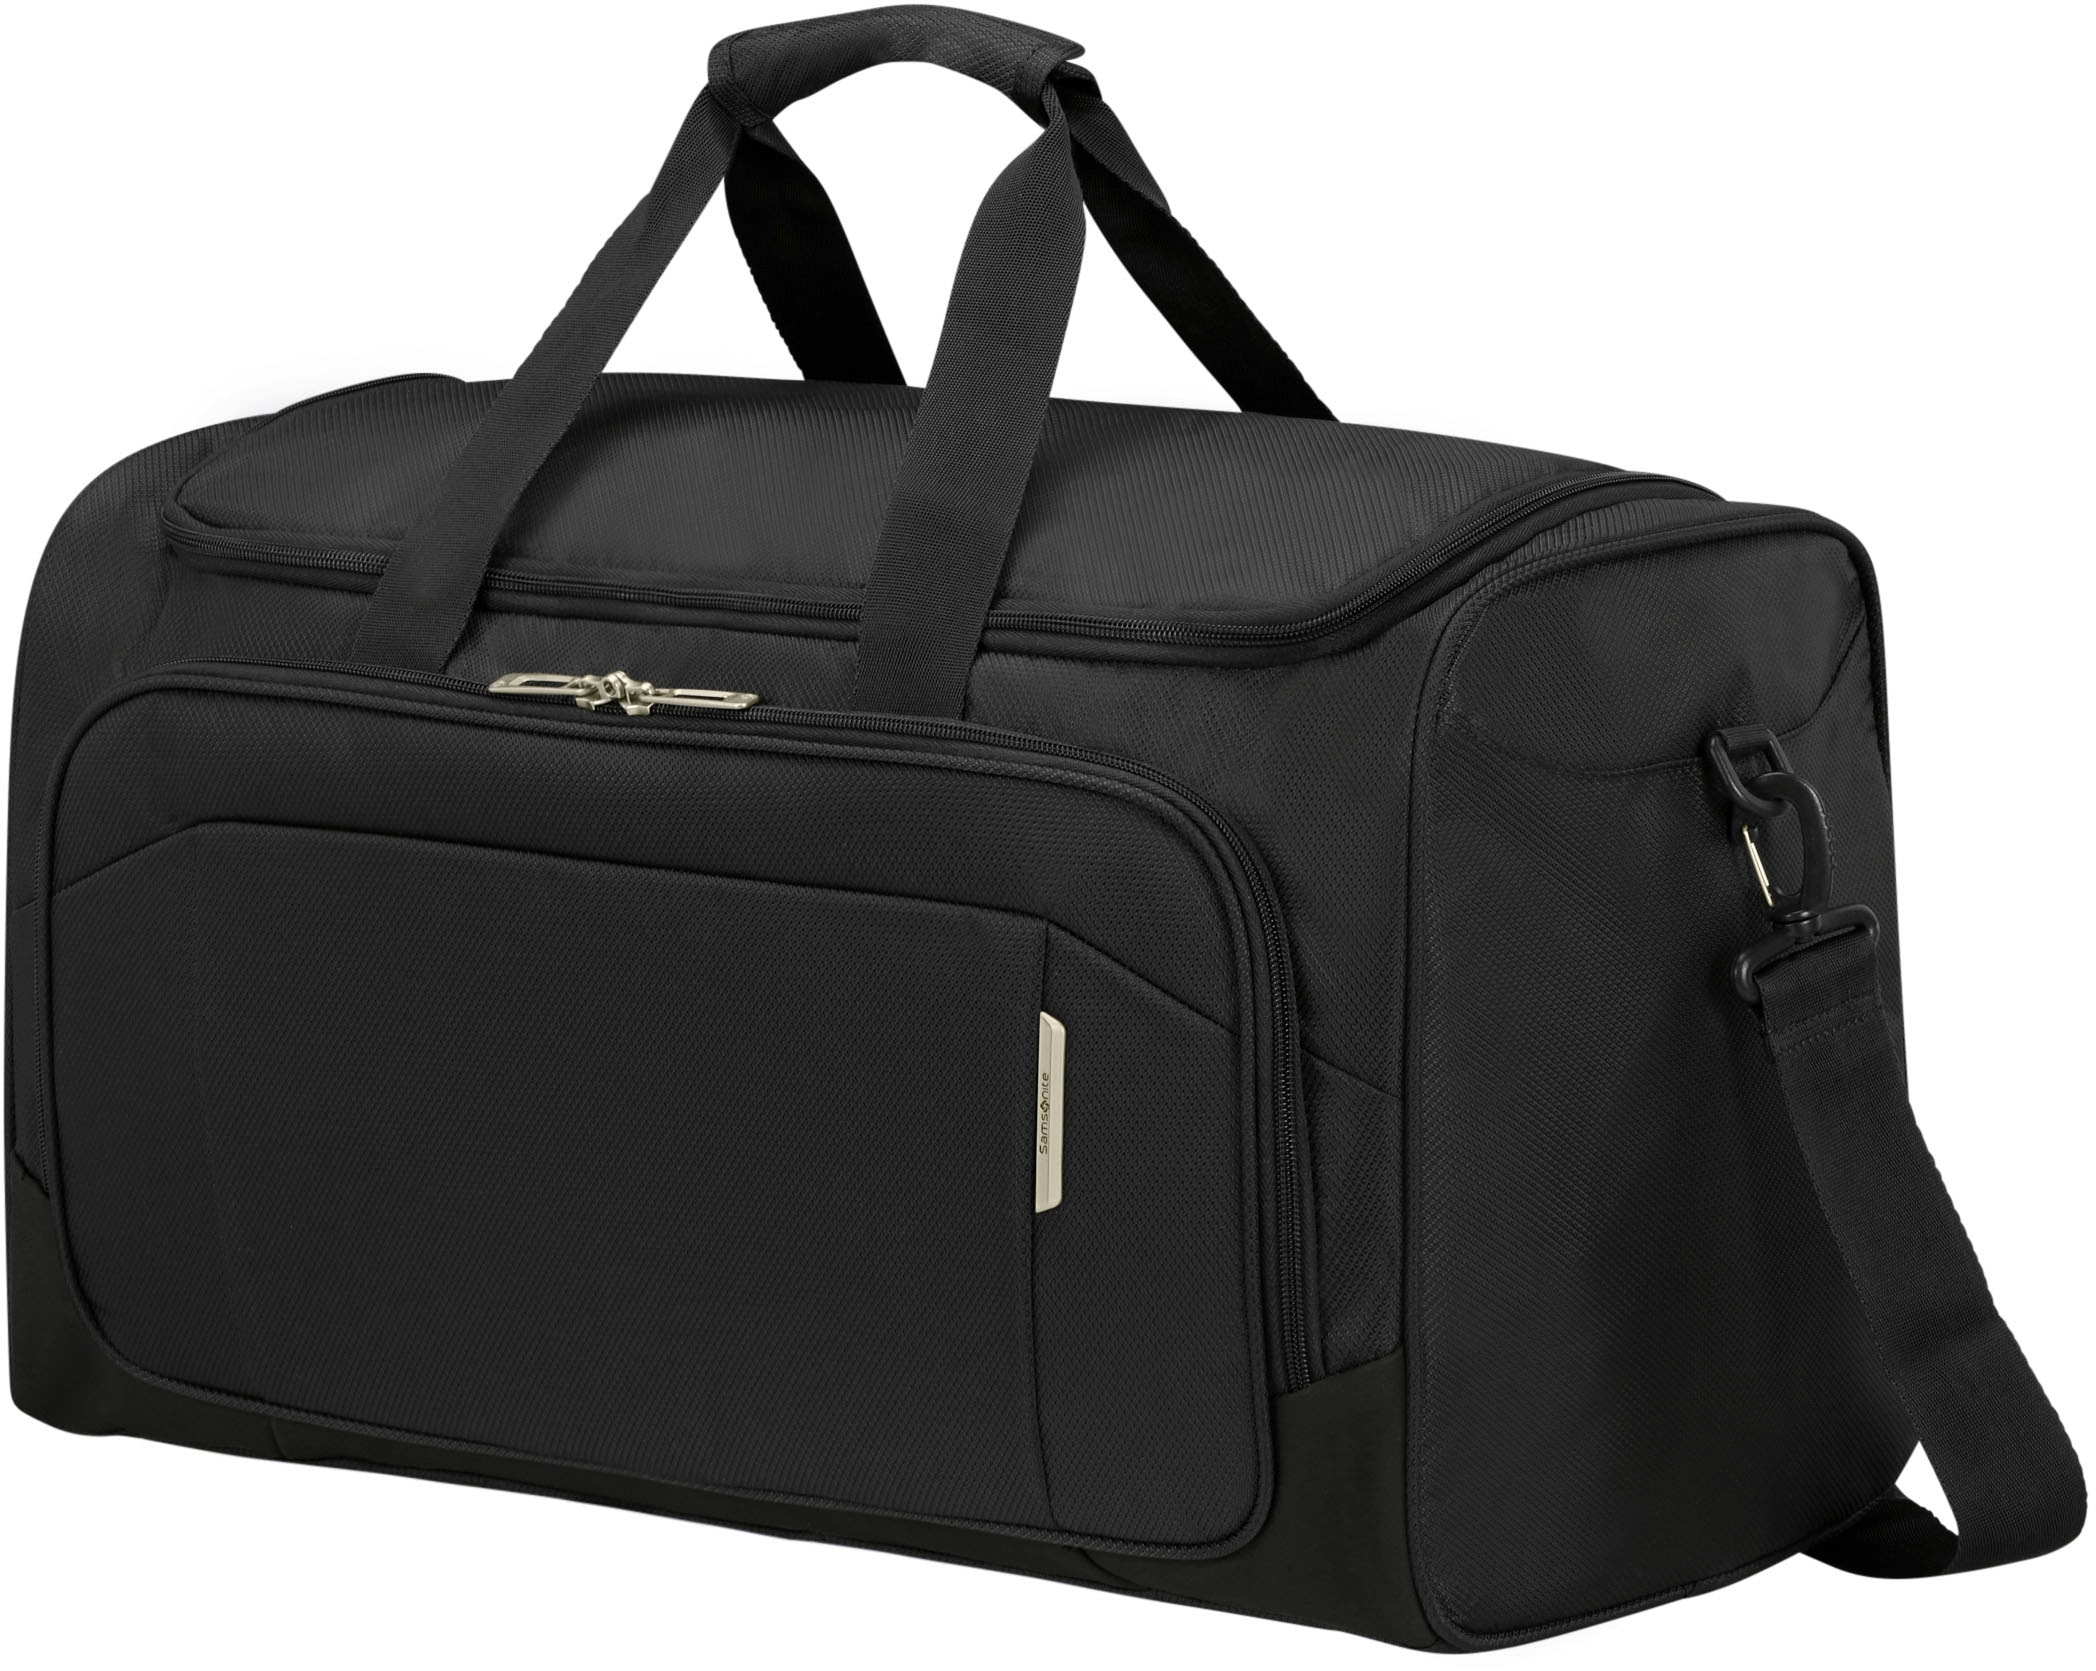 Samsonite Reisetasche "Respark, ozone black, 55 cm", Handgepäcktasche Reisegepäck mit Trolley-Aufsteck-System